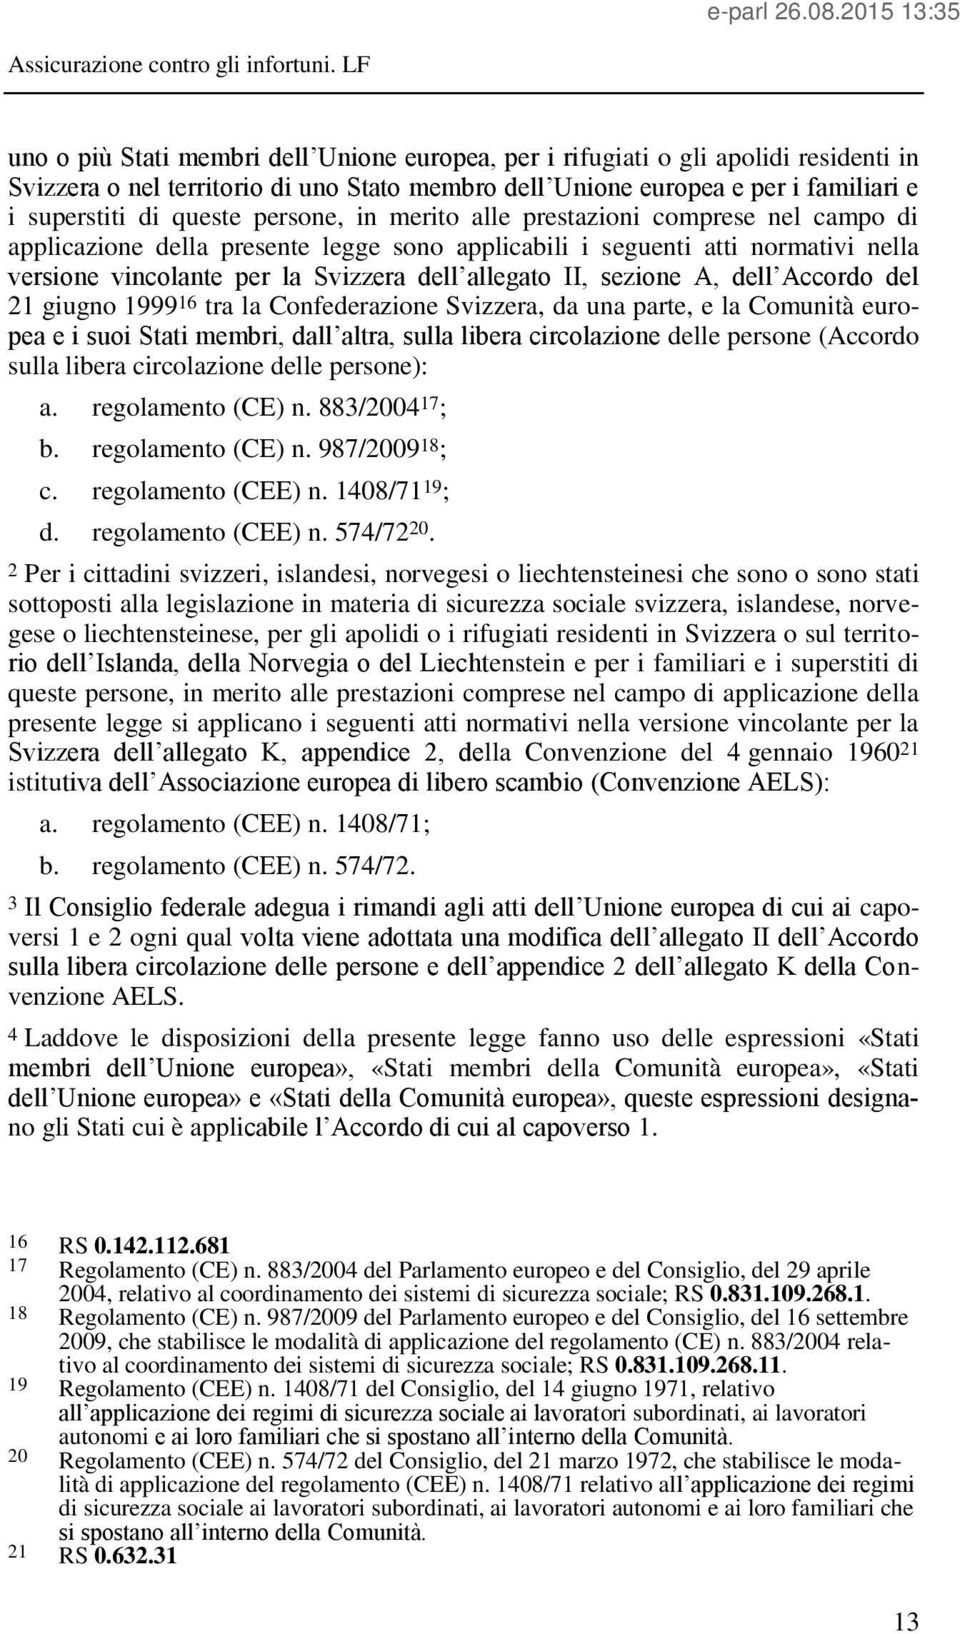 sezione A, dell Accordo del 21 giugno 1999 16 tra la Confederazione Svizzera, da una parte, e la Comunità europea e i suoi Stati membri, dall altra, sulla libera circolazione delle persone (Accordo